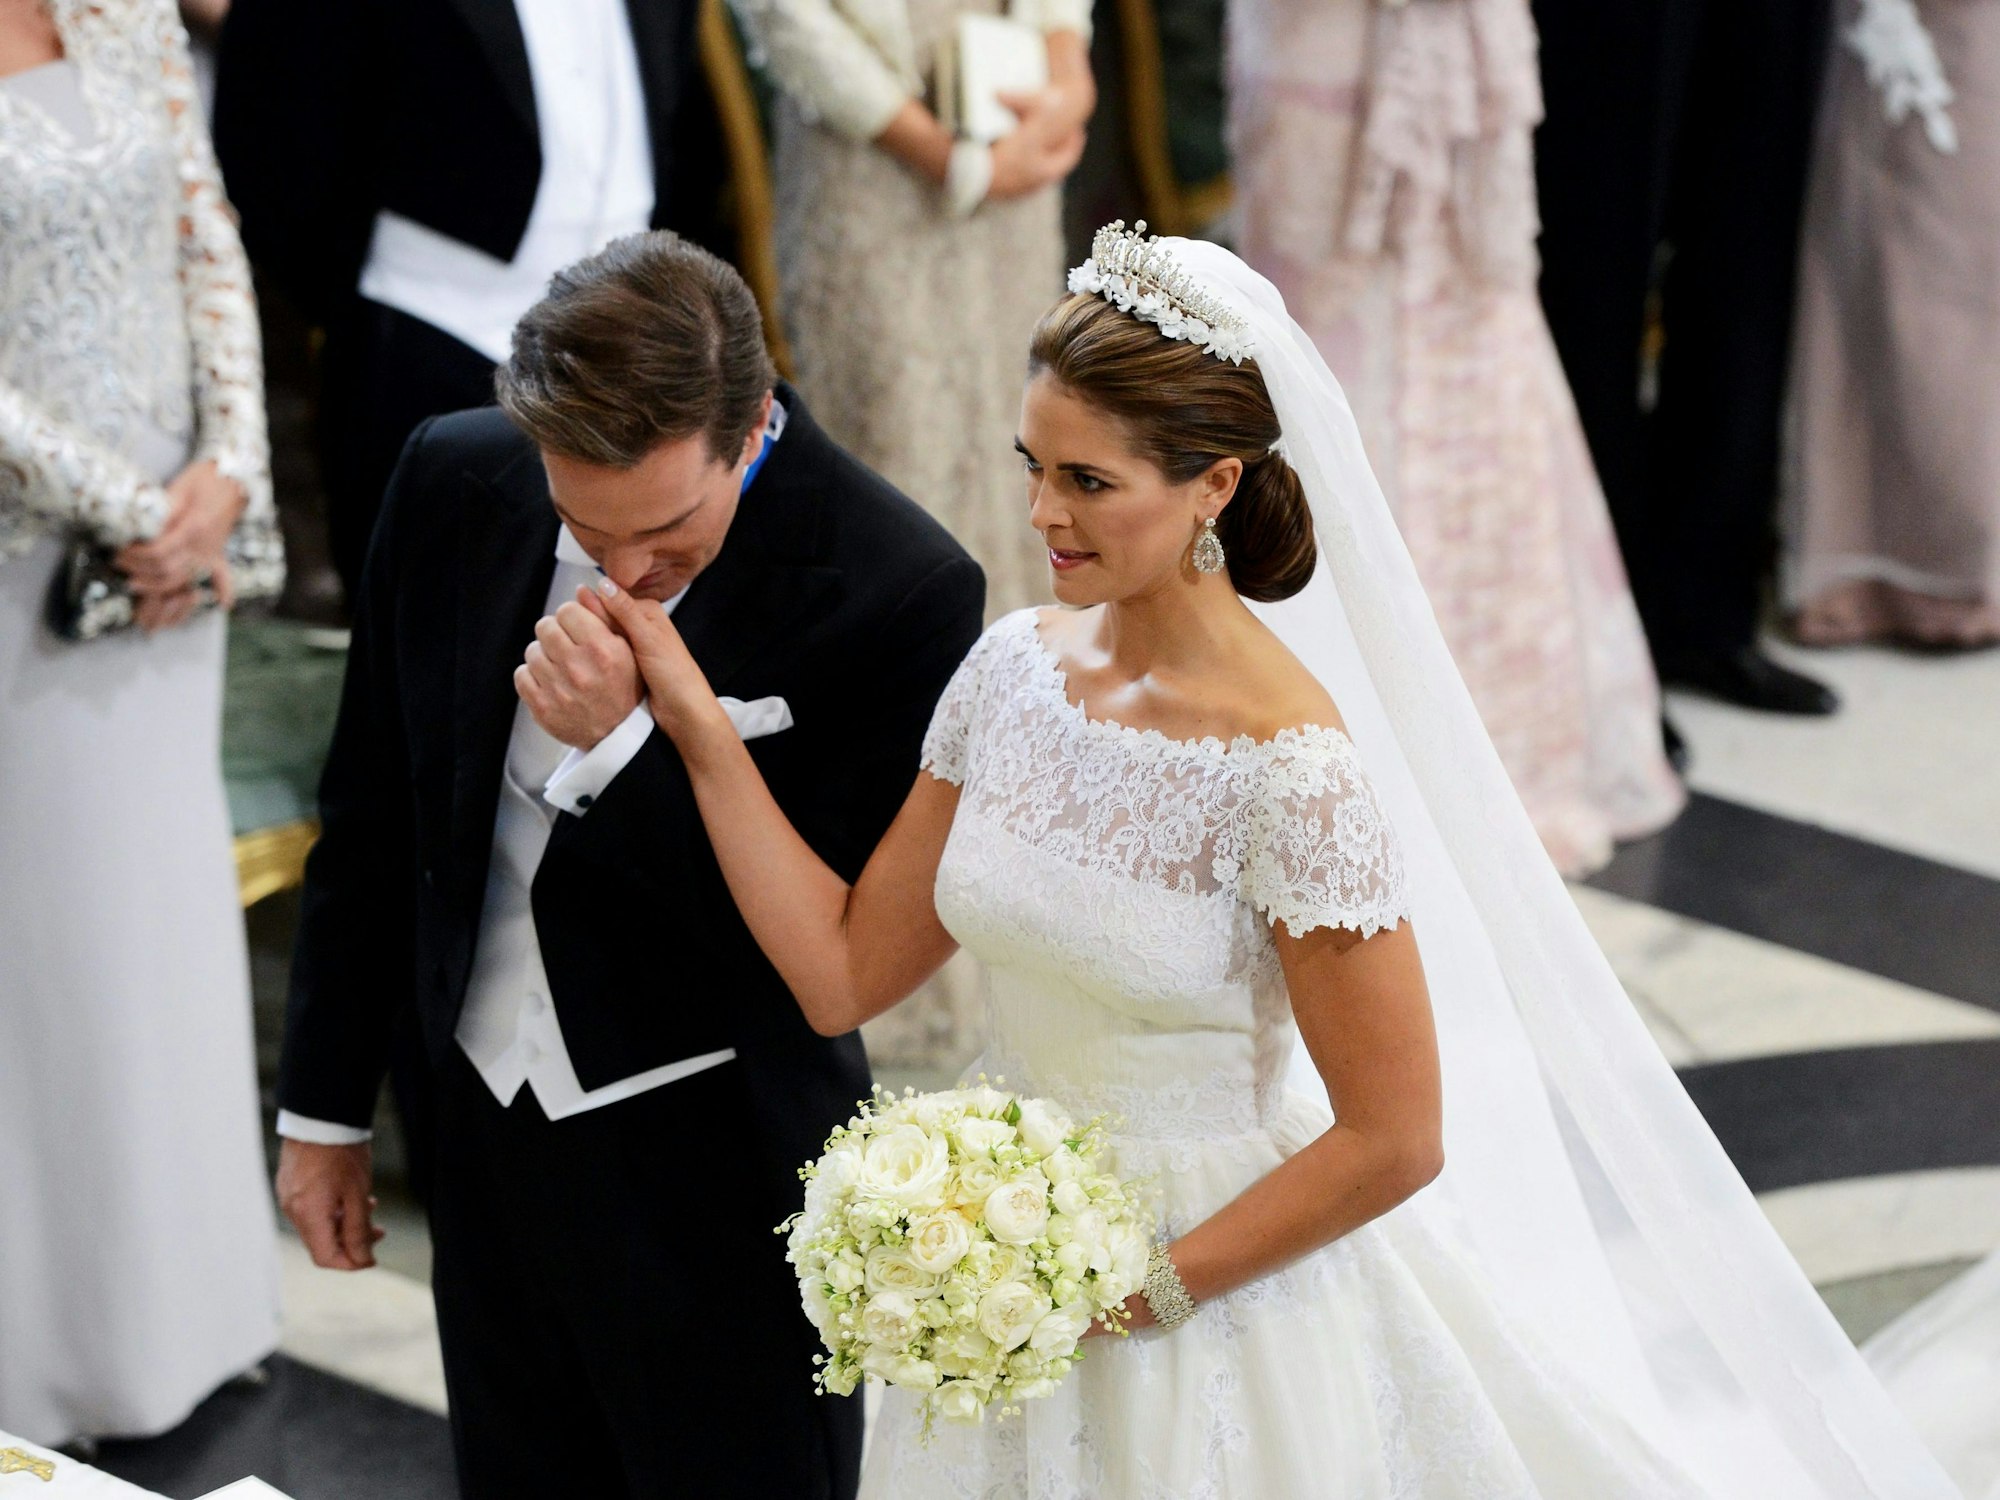 Die Hochzeit fand am 8. Juni 2013 in der königlichen Kapelle von Stockholm statt. Ehemann Chris O'Neill hat übrigens bewusst auf einen königlichen Titel verzichtet und die schwedische Staatsbürgerschaft abgelehnt. Er will als Geschäftsmann unabhängig bleiben. Das brachte ihm und Madeleine Kritik ein.